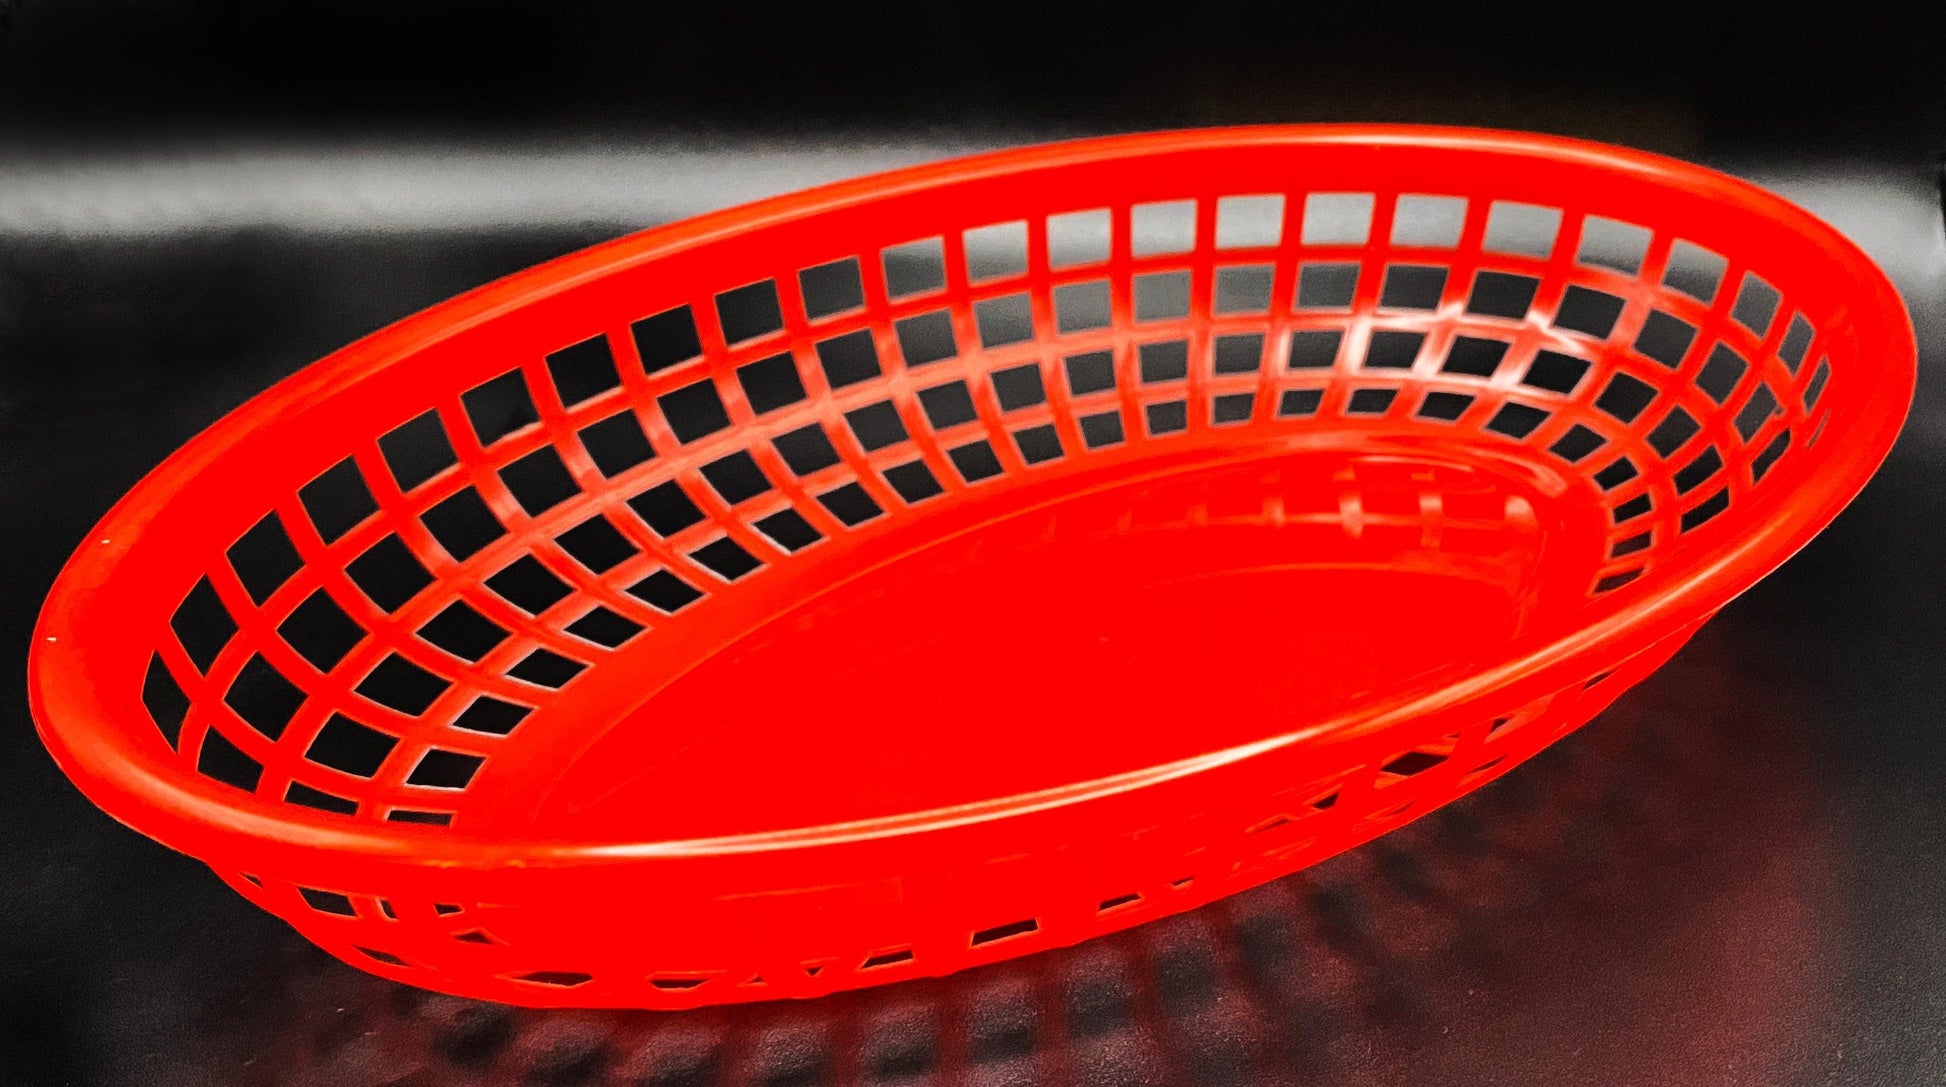 Diner Basket Soap Dish - Biggie Bites Soap Co.